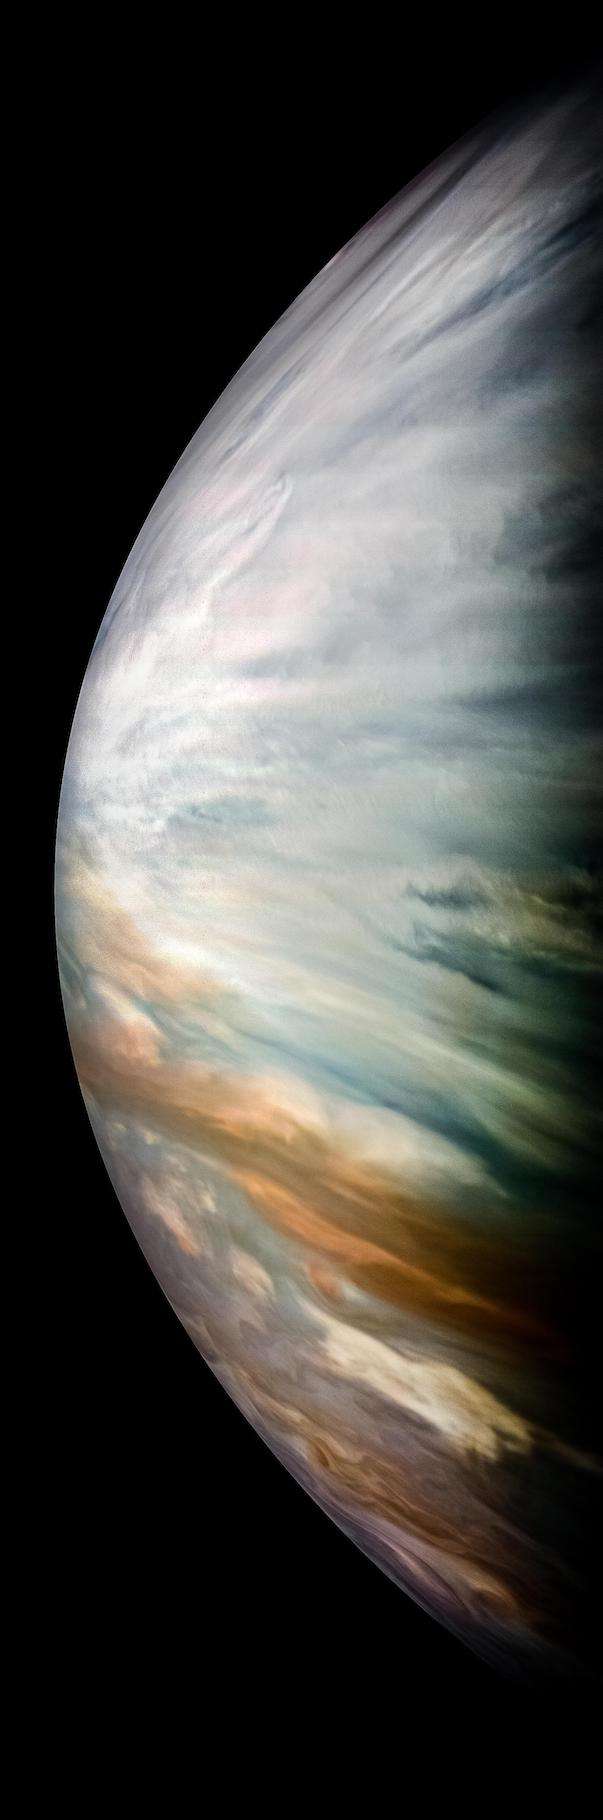 Sur cette image prise par la sonde Juno en décembre 2017, on découvre d’épais nuages blancs dans la région équatoriale de Jupiter. Mais ceux-ci sont transparents aux micro-ondes ce qui a permis au radiomètre à micro-ondes de la sonde de mesurer les taux d’eau dans l’atmosphère de la planète géante. © Nasa/JPL-Caltech/SwRI/MSSS/Kevin M. Gill